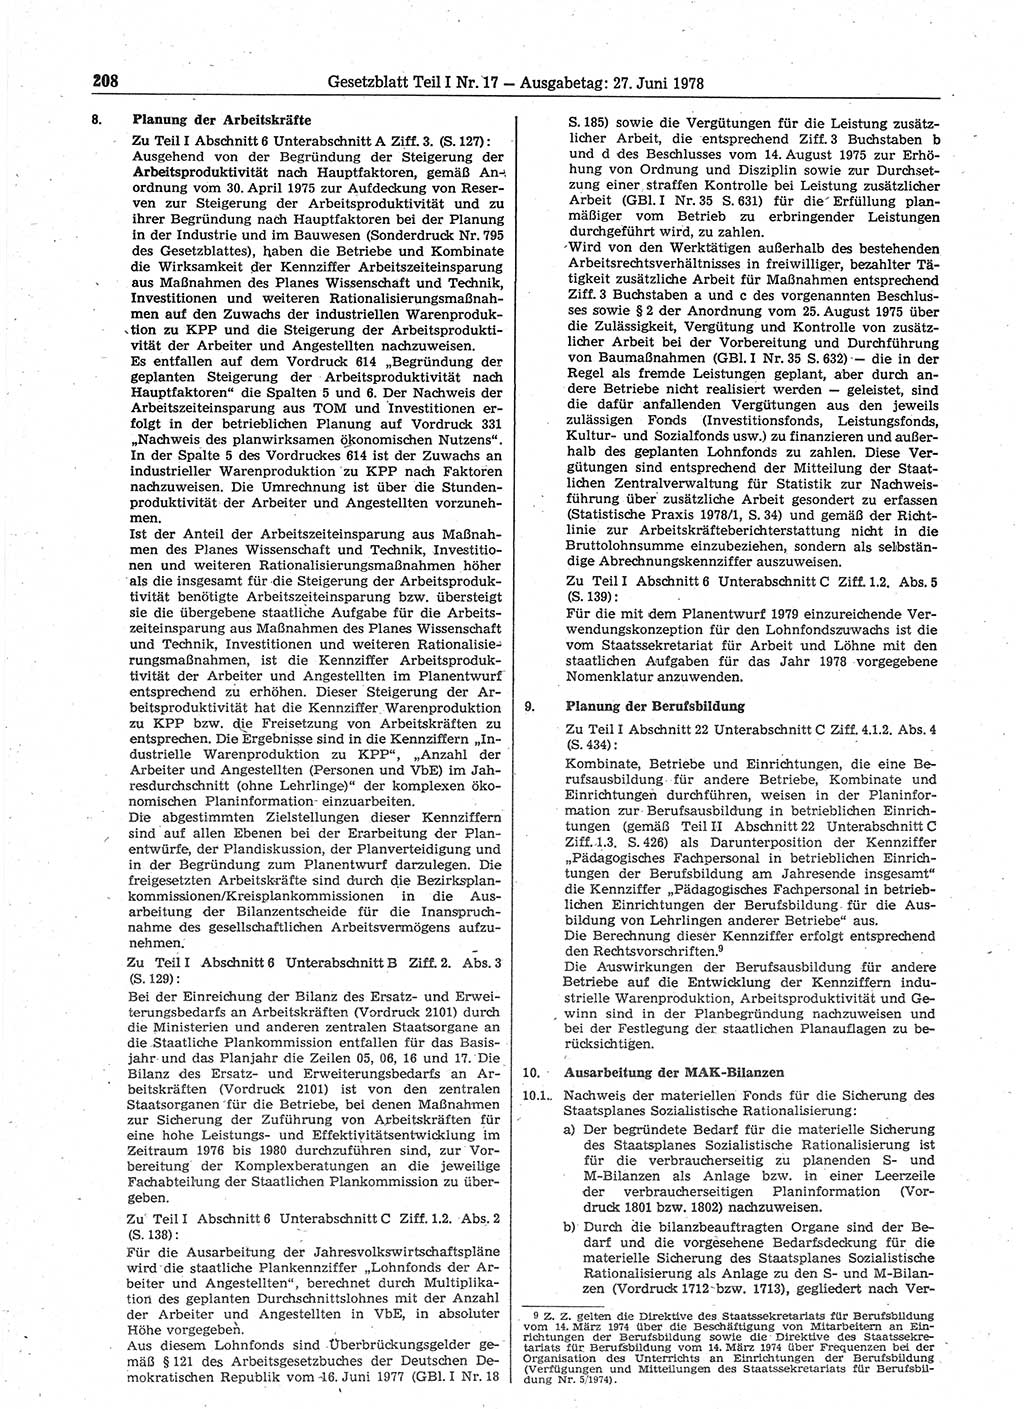 Gesetzblatt (GBl.) der Deutschen Demokratischen Republik (DDR) Teil Ⅰ 1978, Seite 208 (GBl. DDR Ⅰ 1978, S. 208)